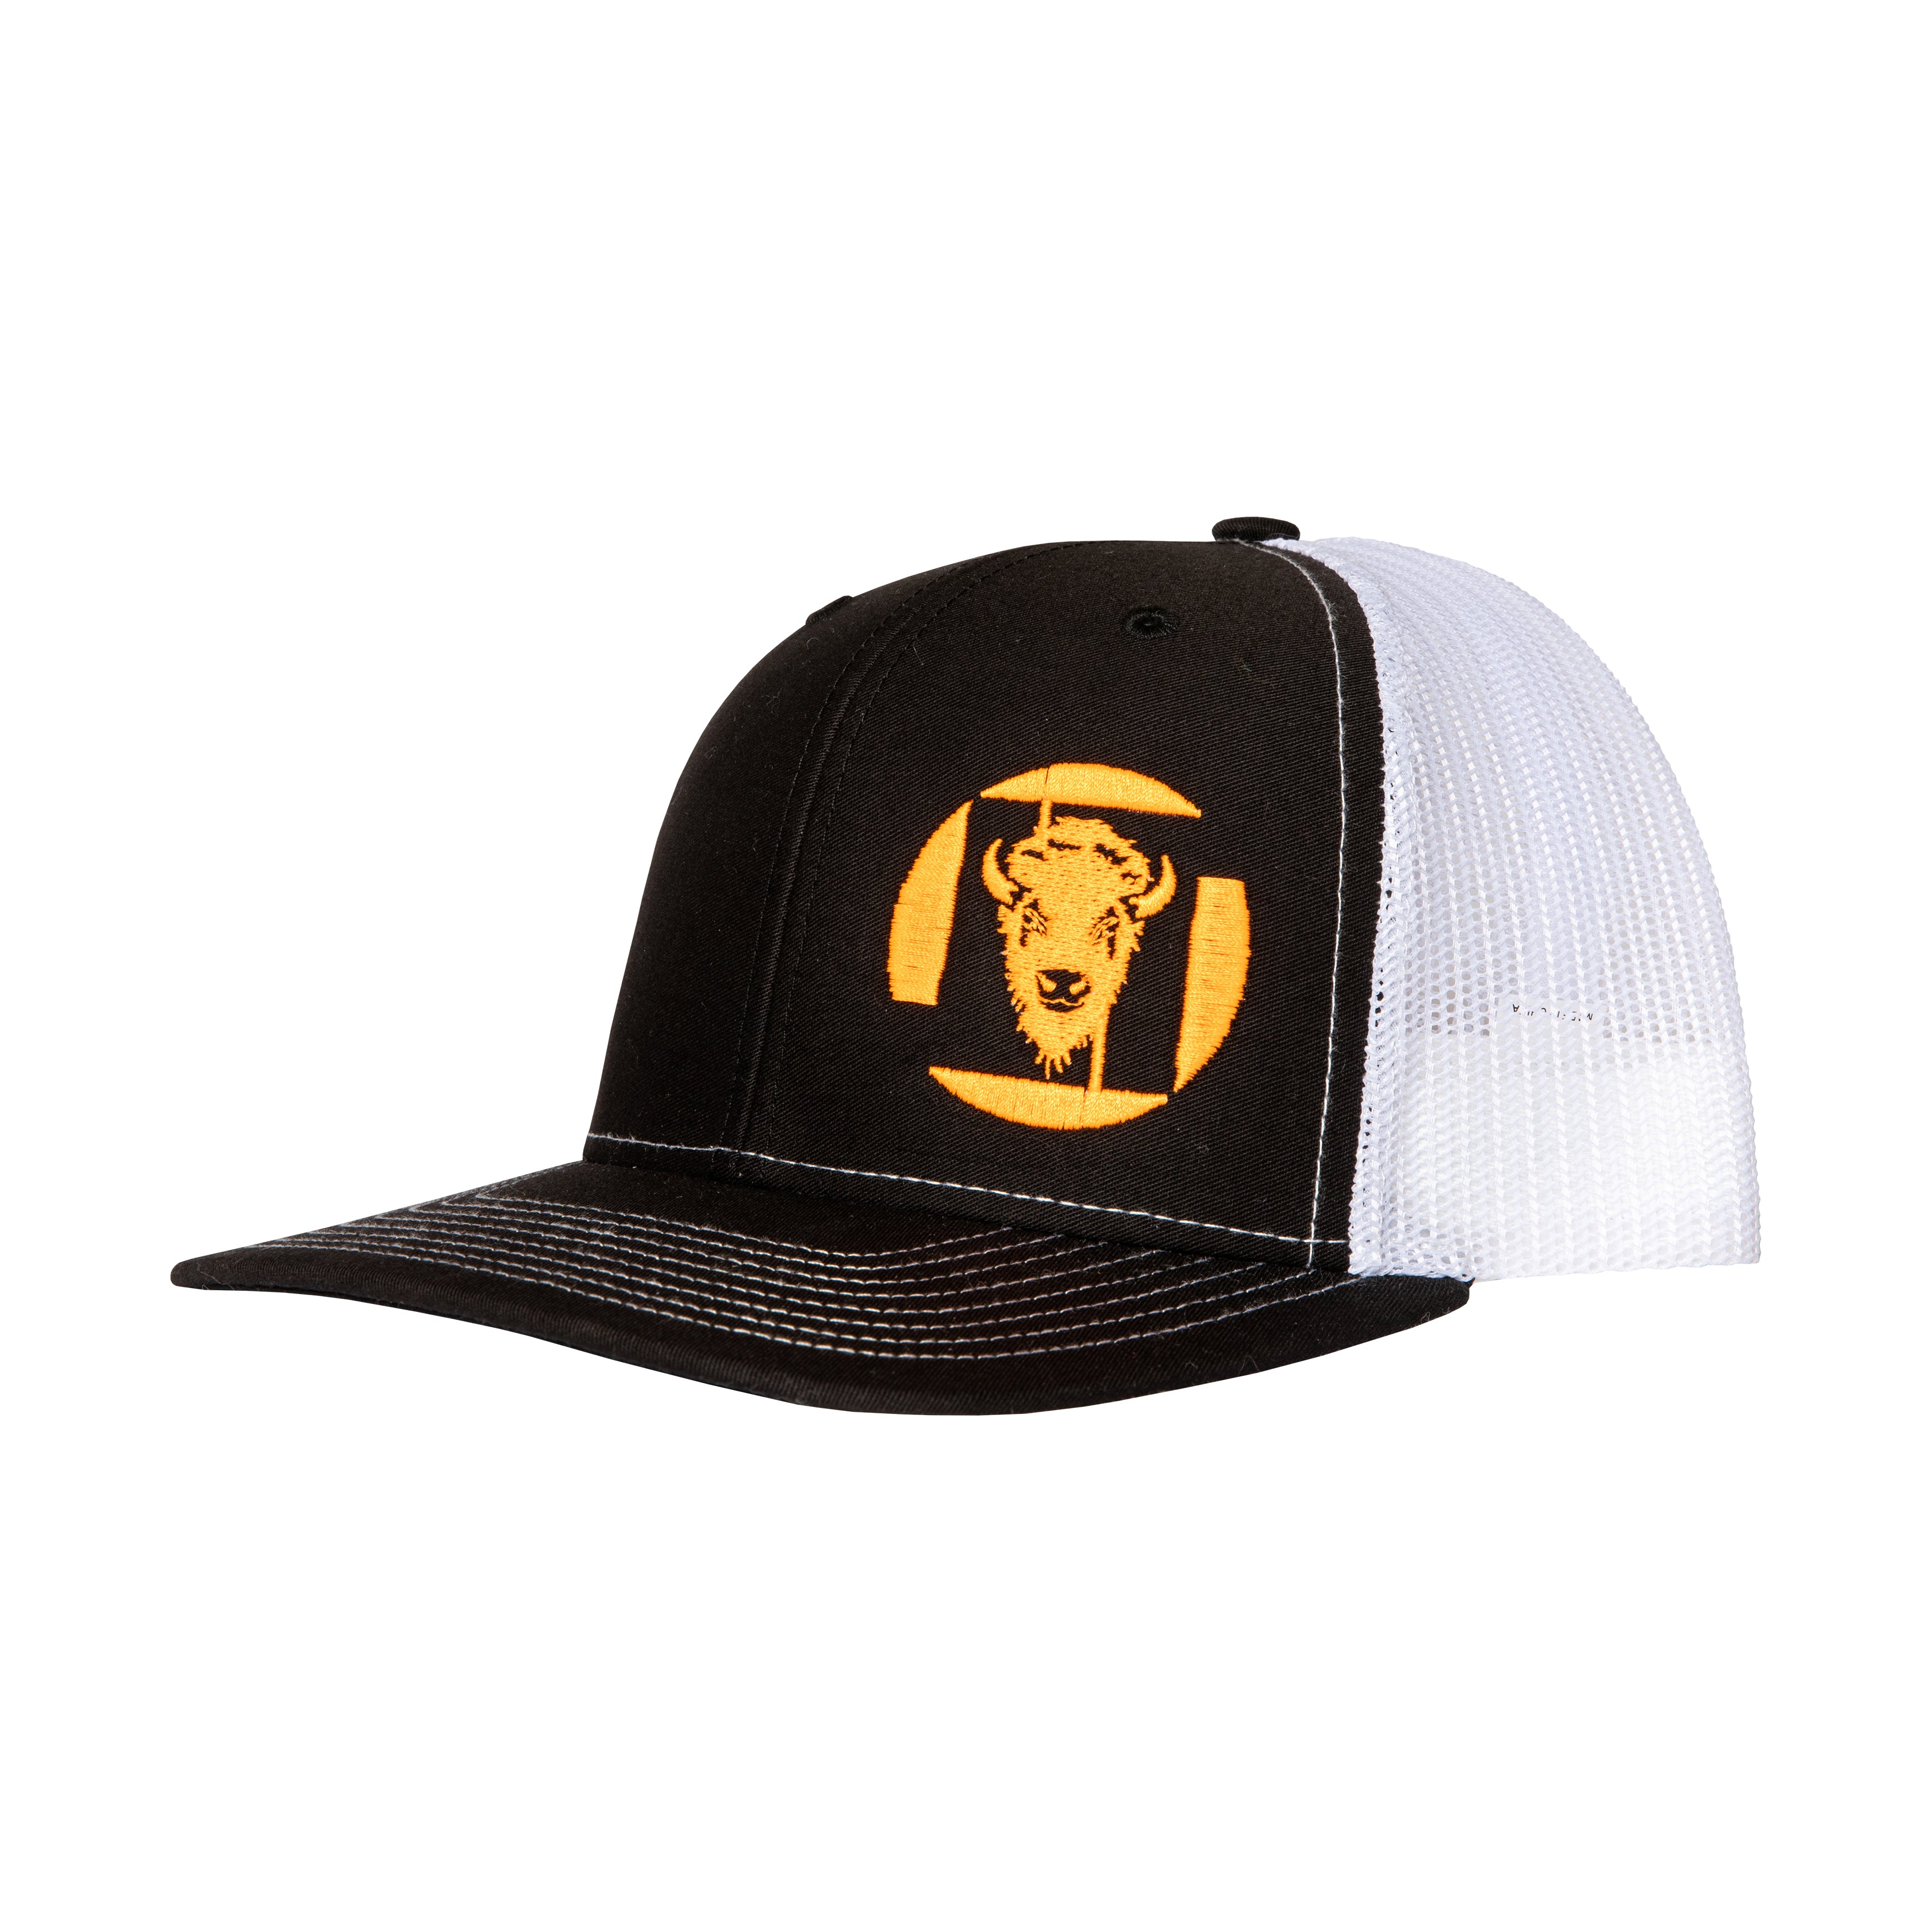 LT Logo Hat Black Crown/Brim with White Mesh Back (8 logo color options)